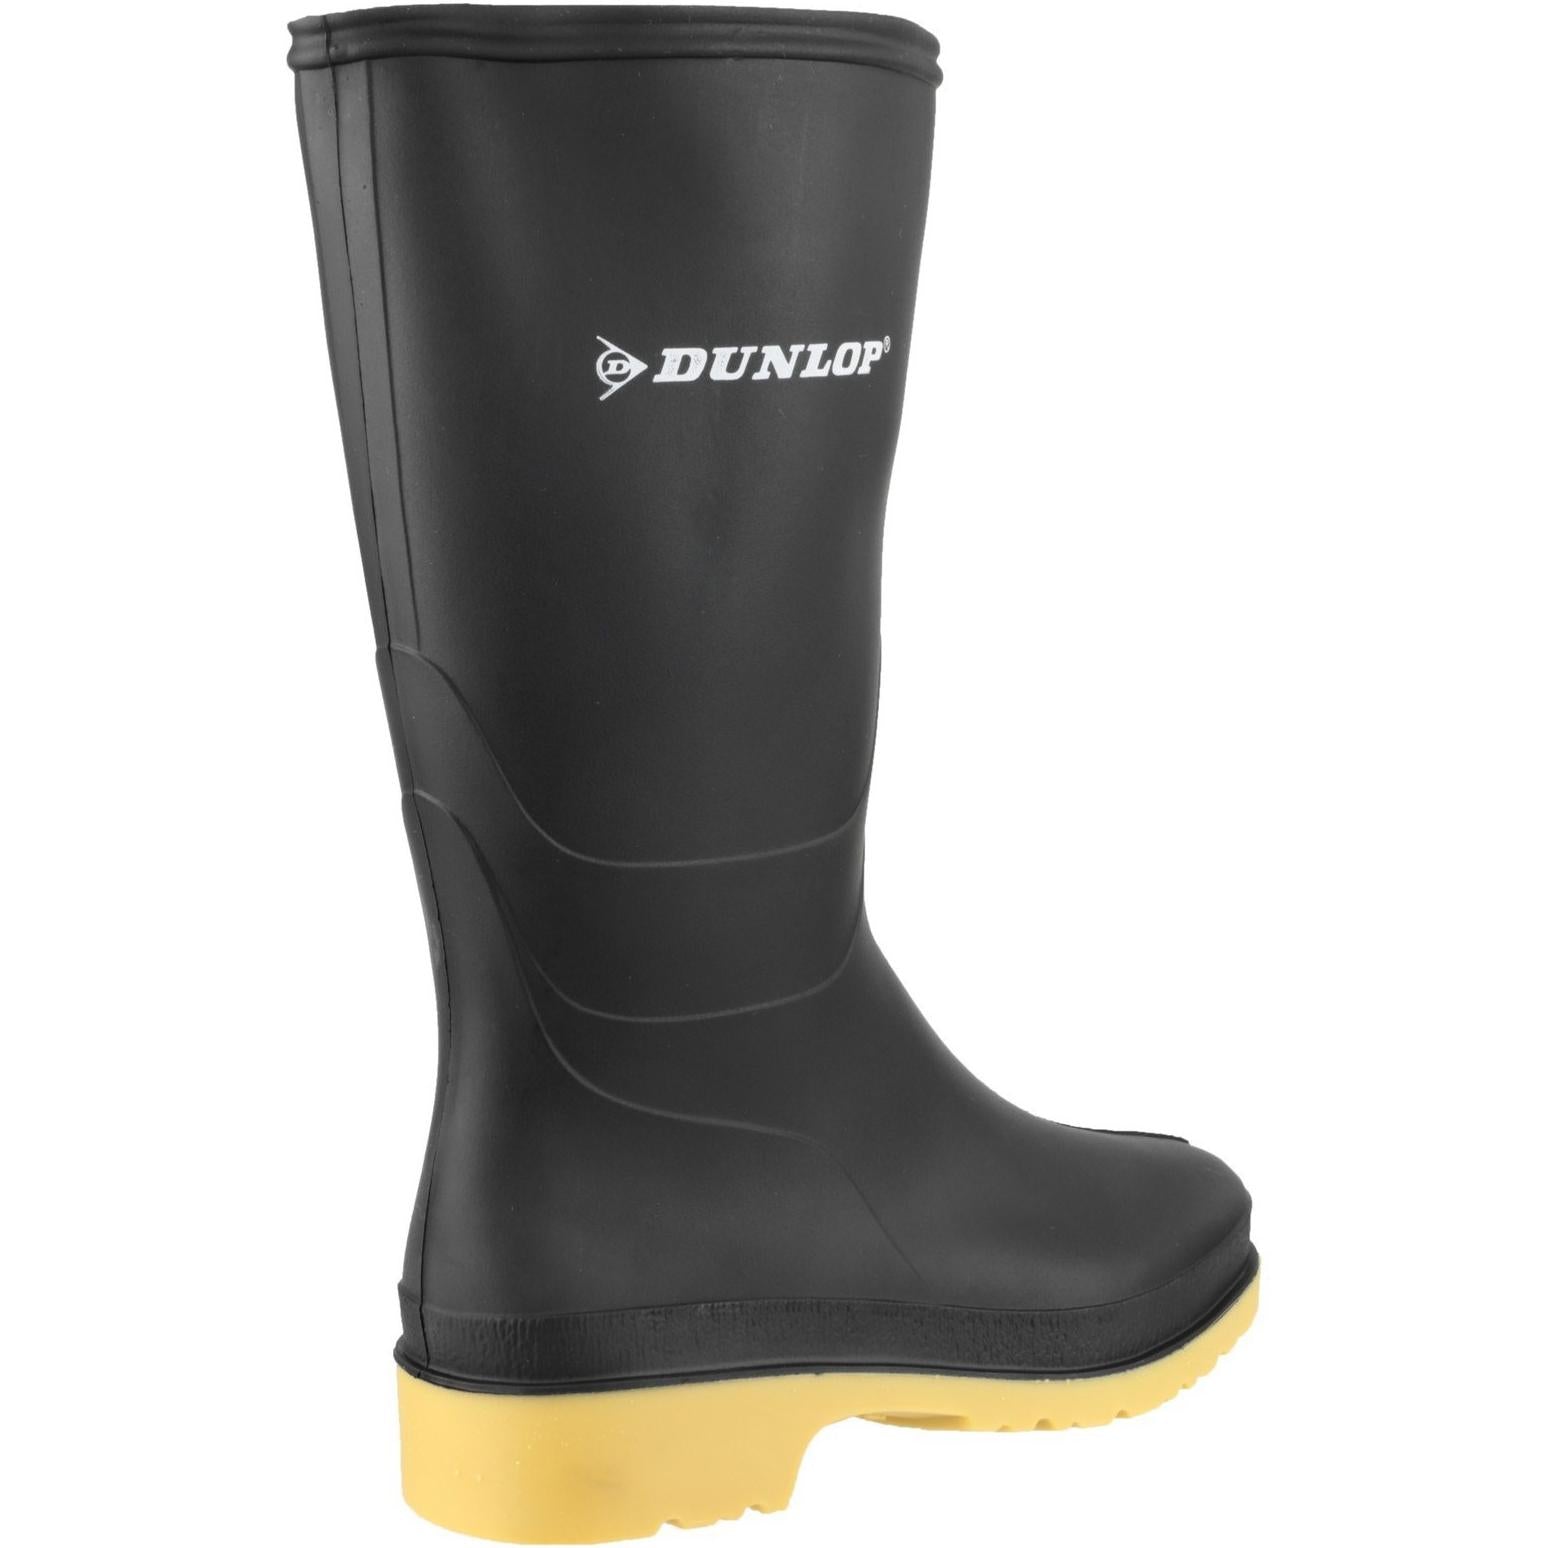 Dunlop Sports Dulls Wellington Boot